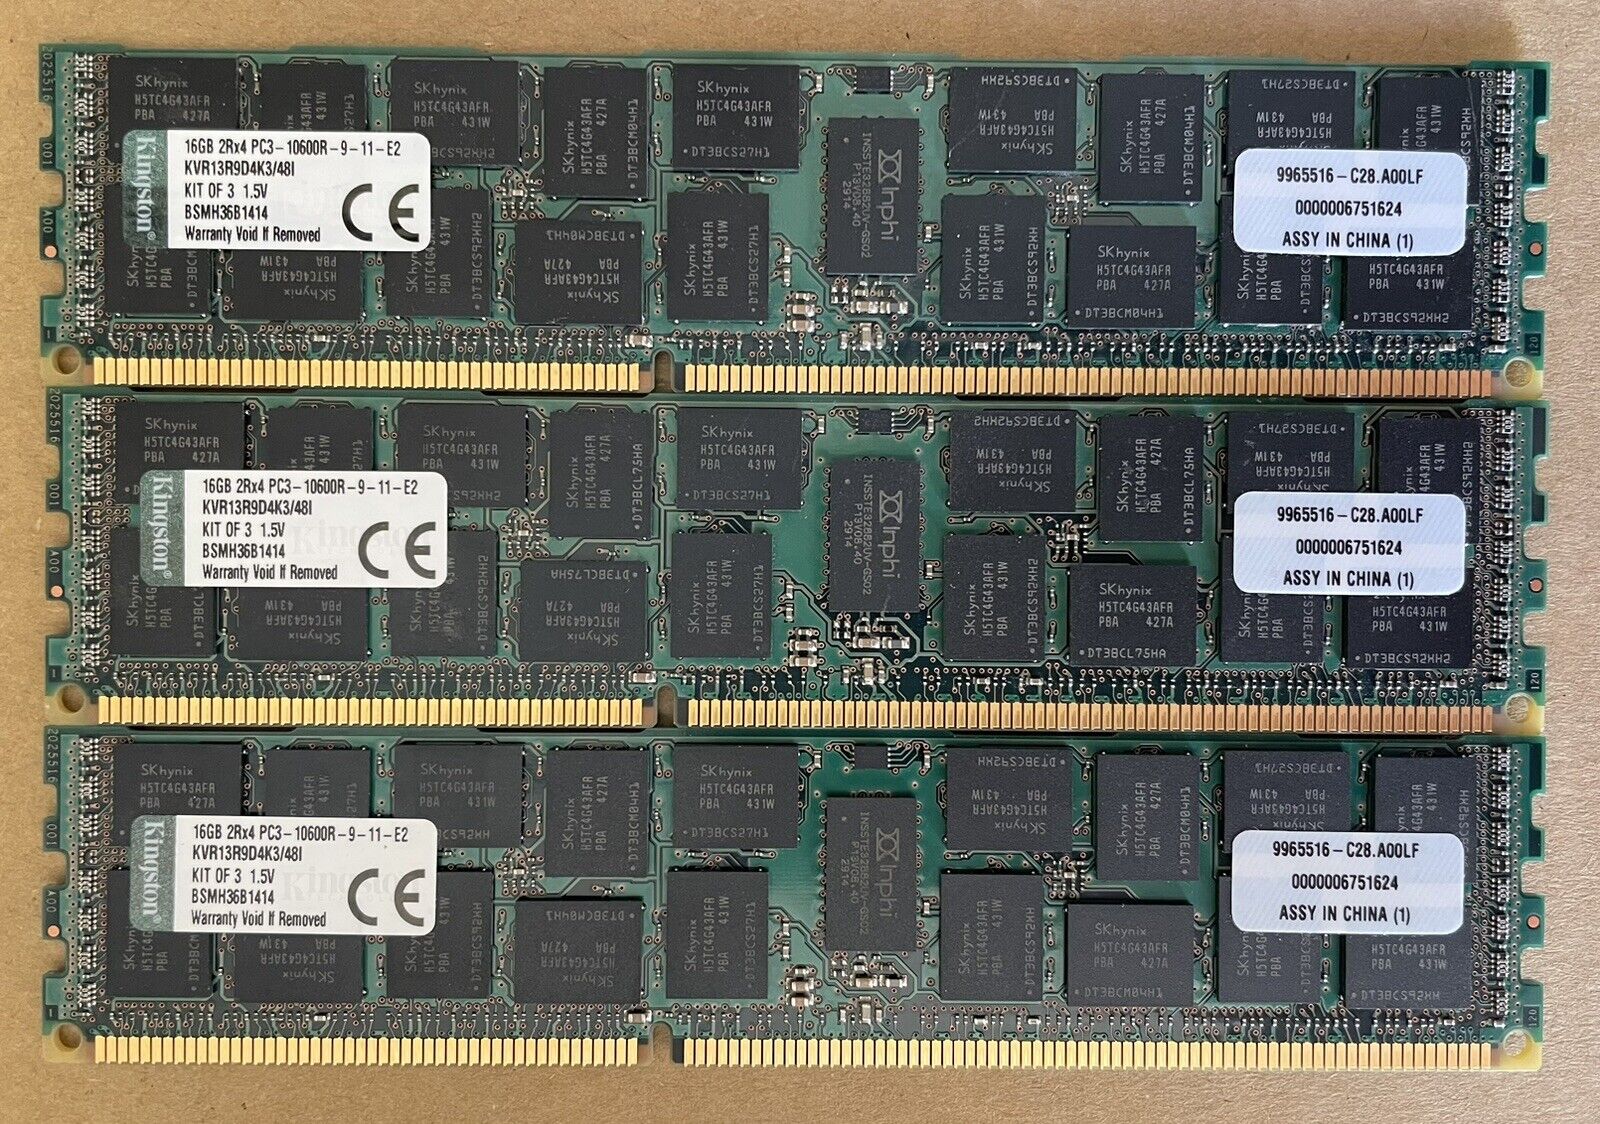 KINGSTON KVR13R9D4K3/48I PC3-10600R DDR3-1333 48GB ECC REG KIT (16GB X3)